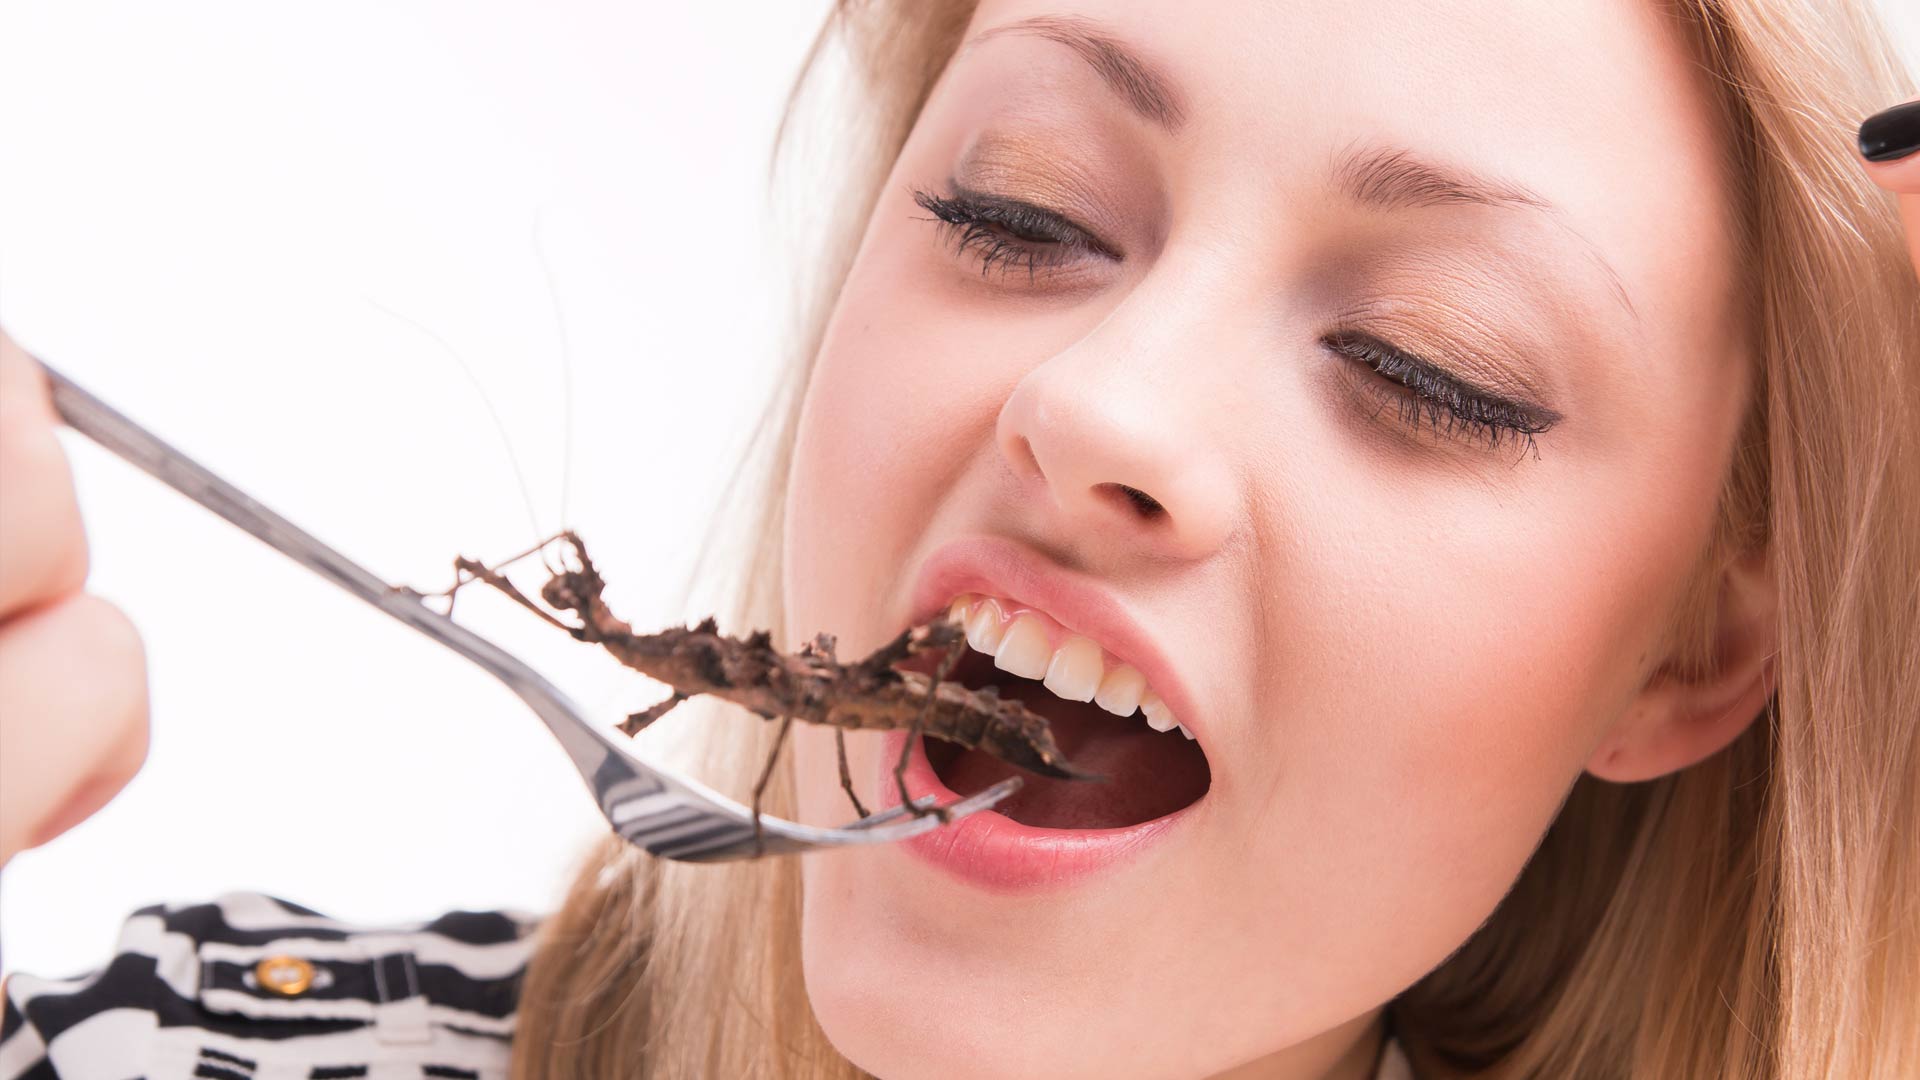 Schadelijk hoek Nieuwe aankomst Is het eten van insecten gezond? - FIT.nl